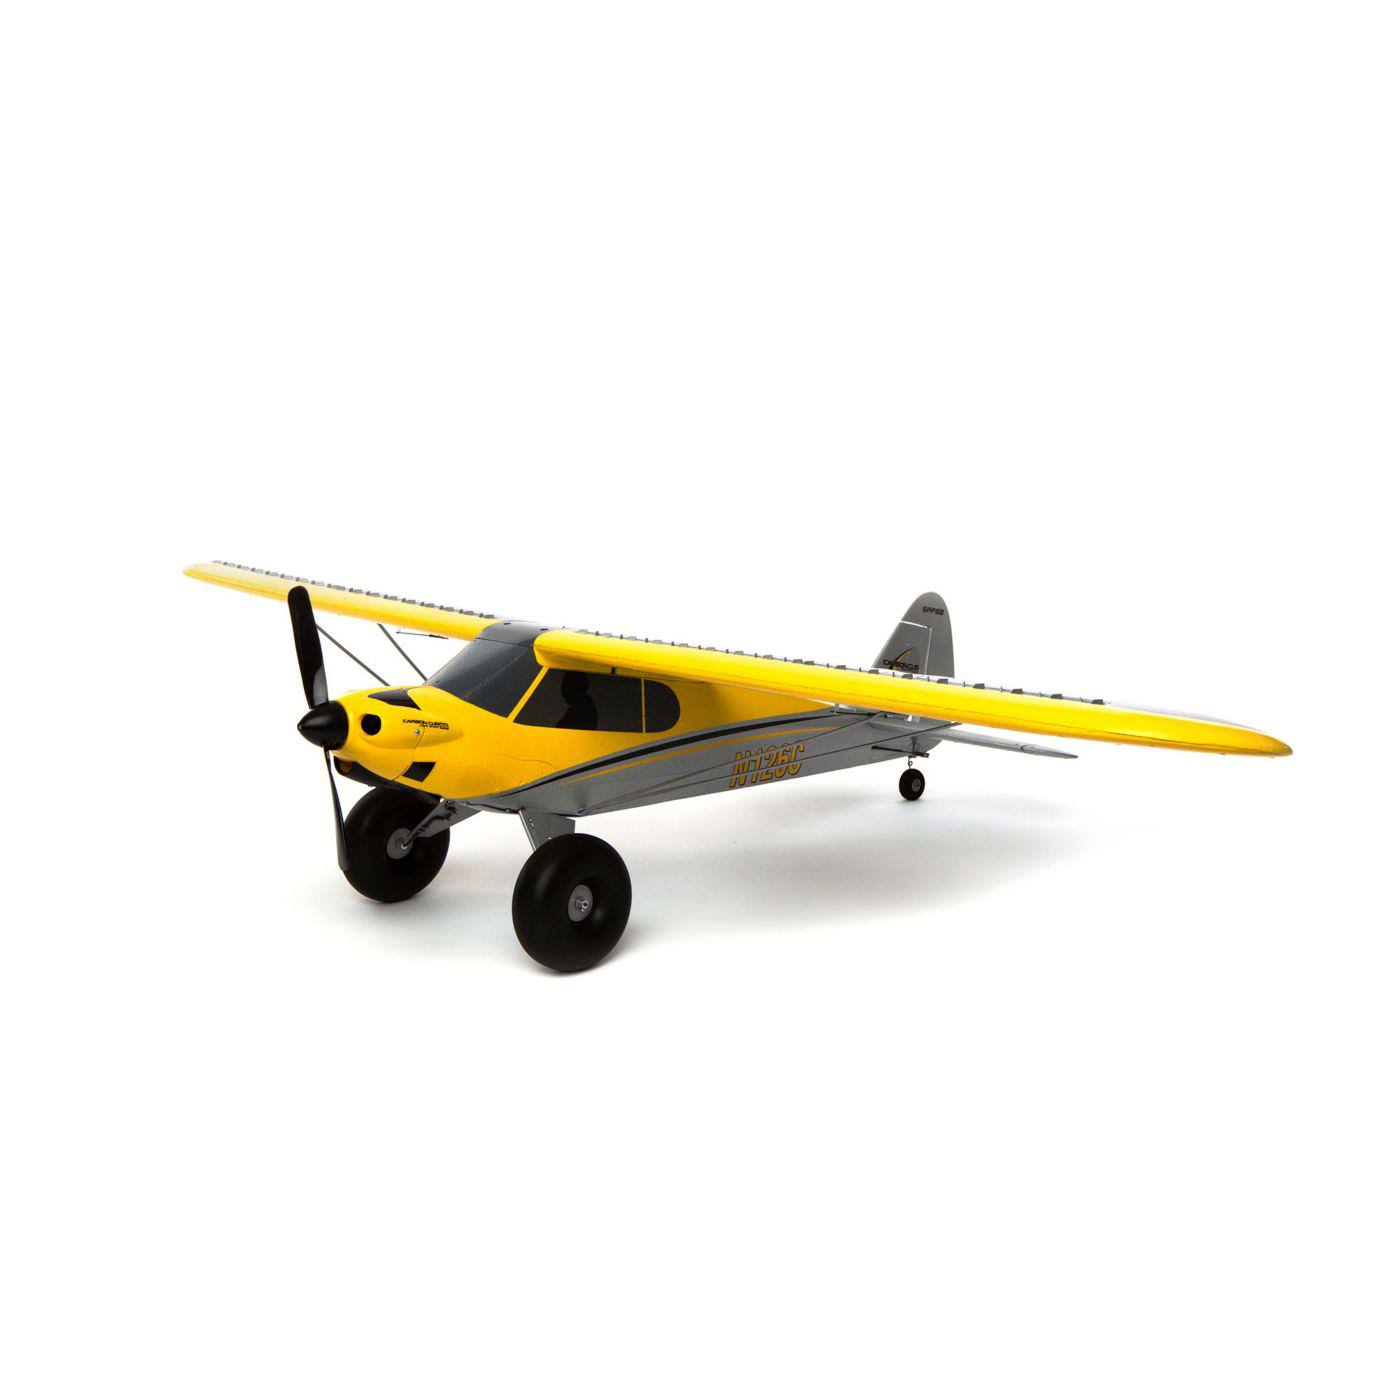 Hobbyzone Scale Hochdecker Starter Flight Model Carbon Cub S 2 RTF/HBZ32000